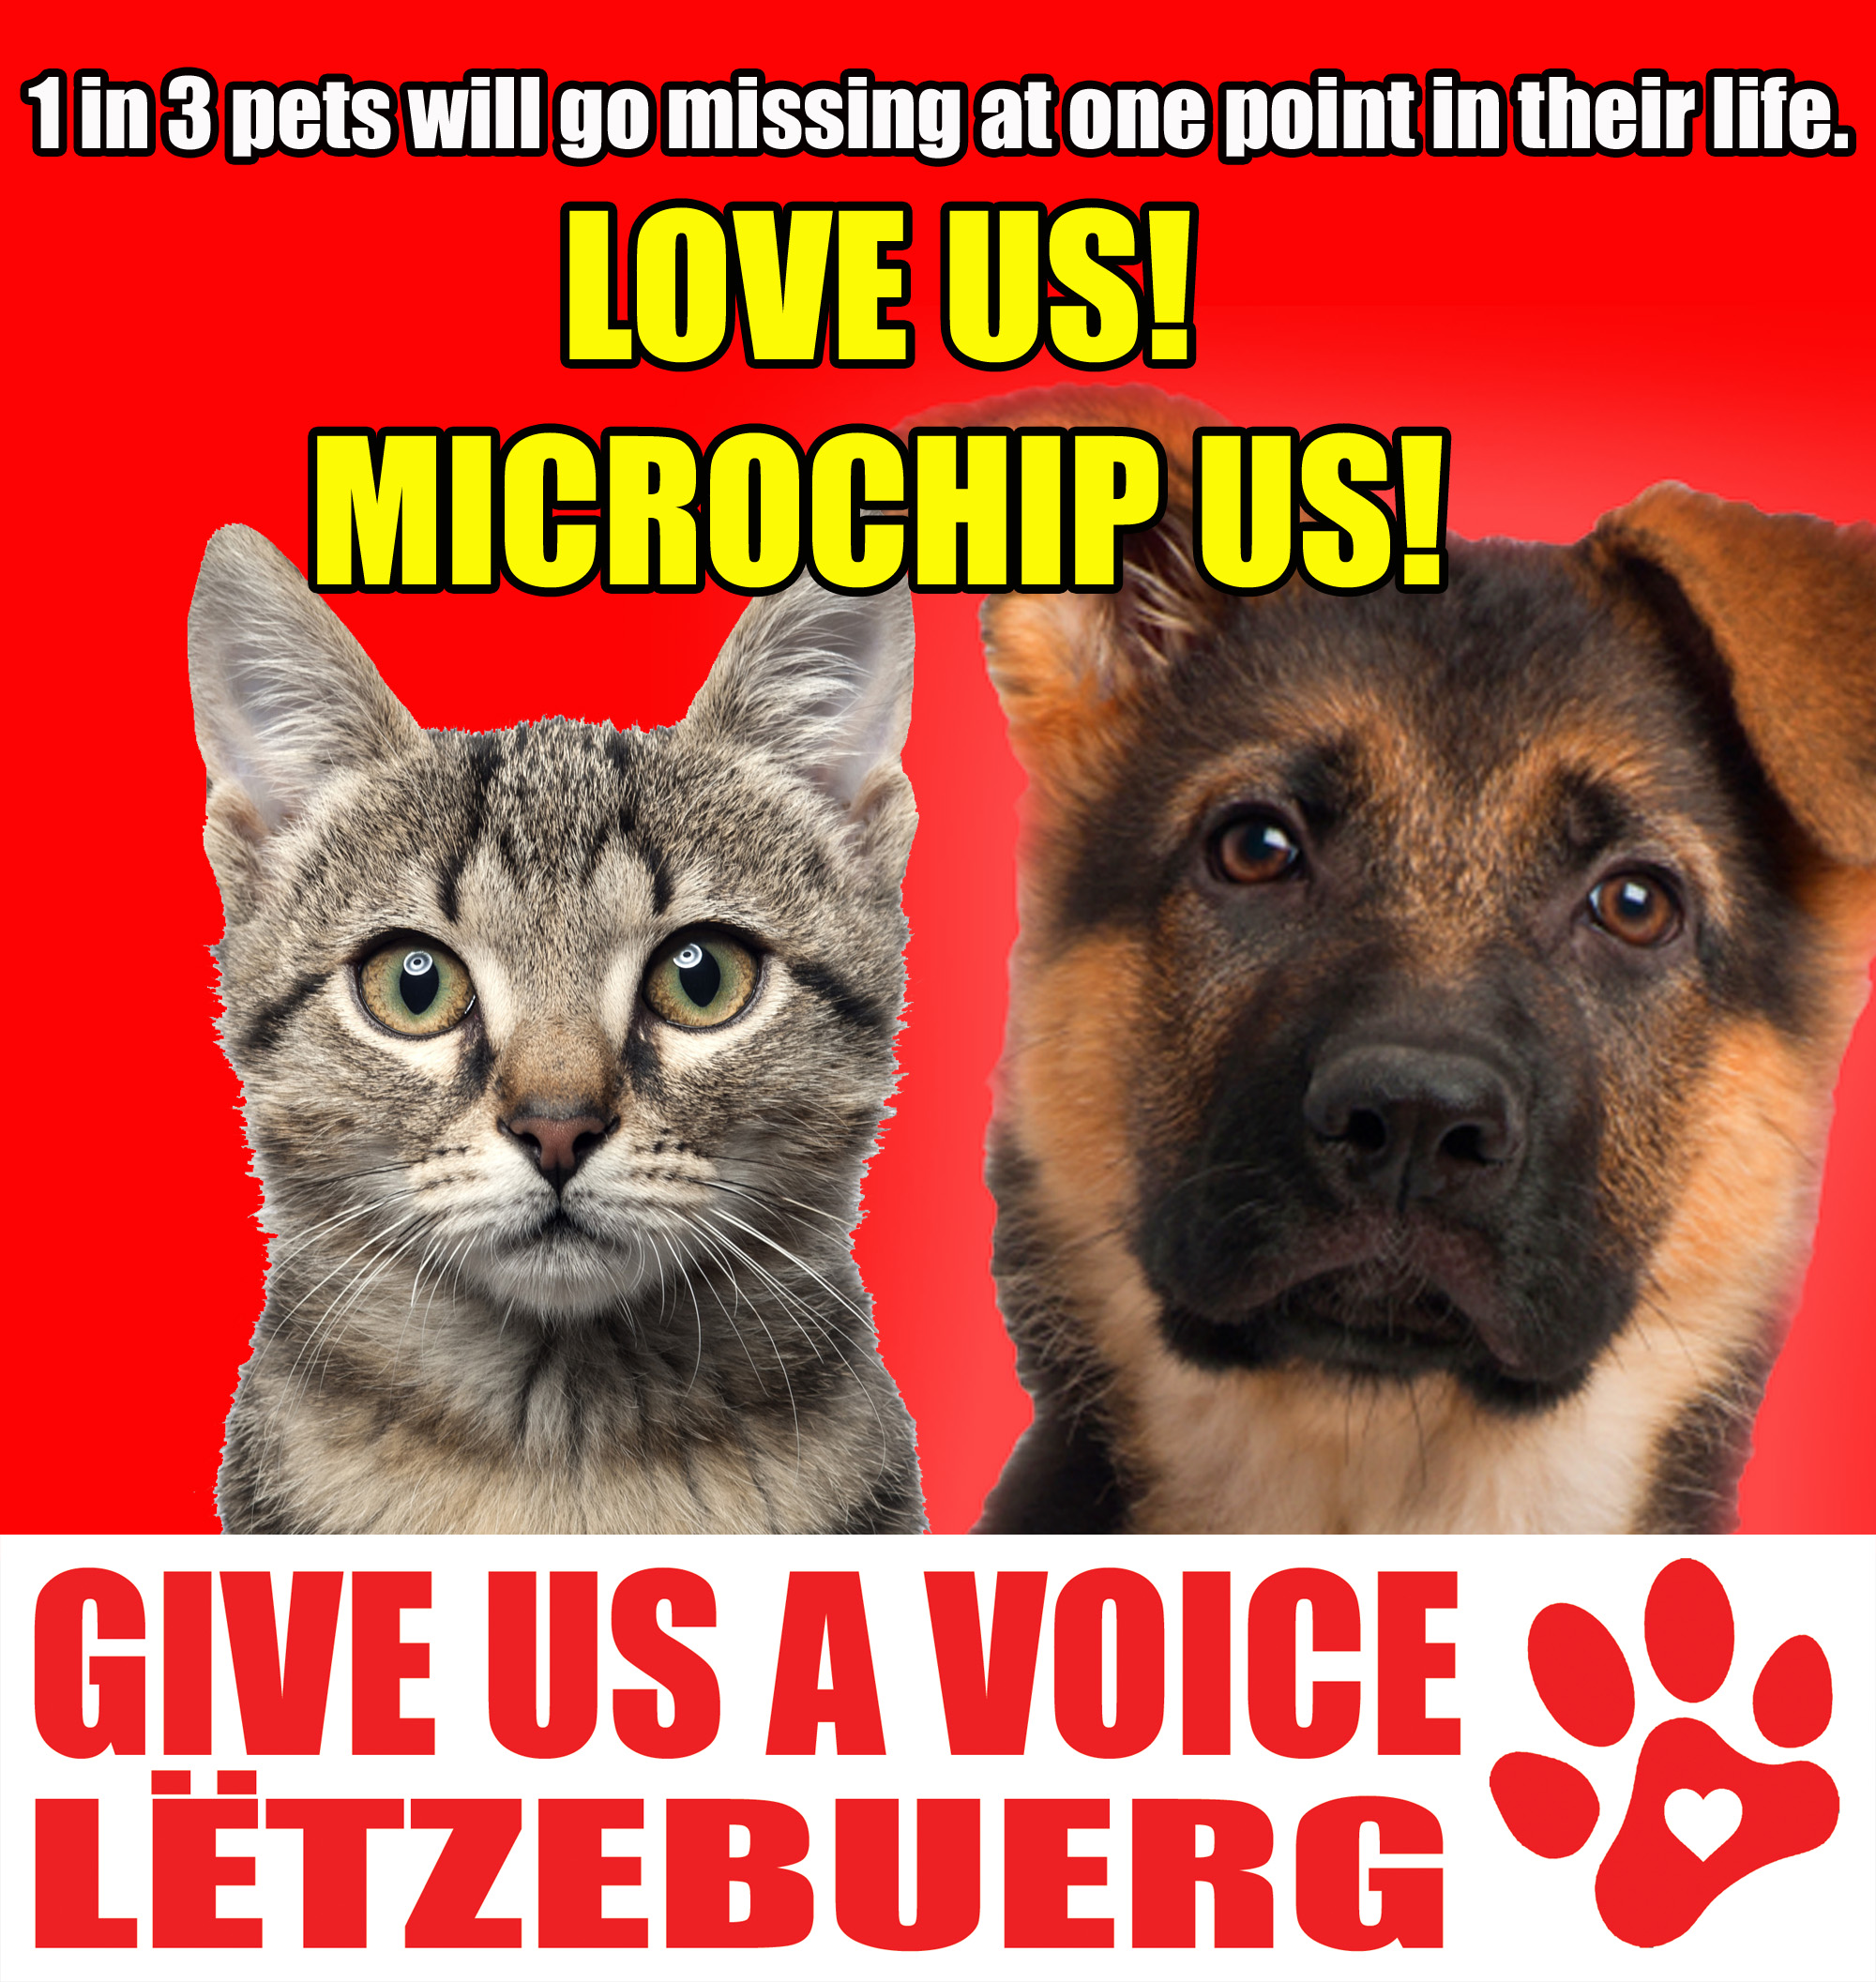 Microchip your pets copy